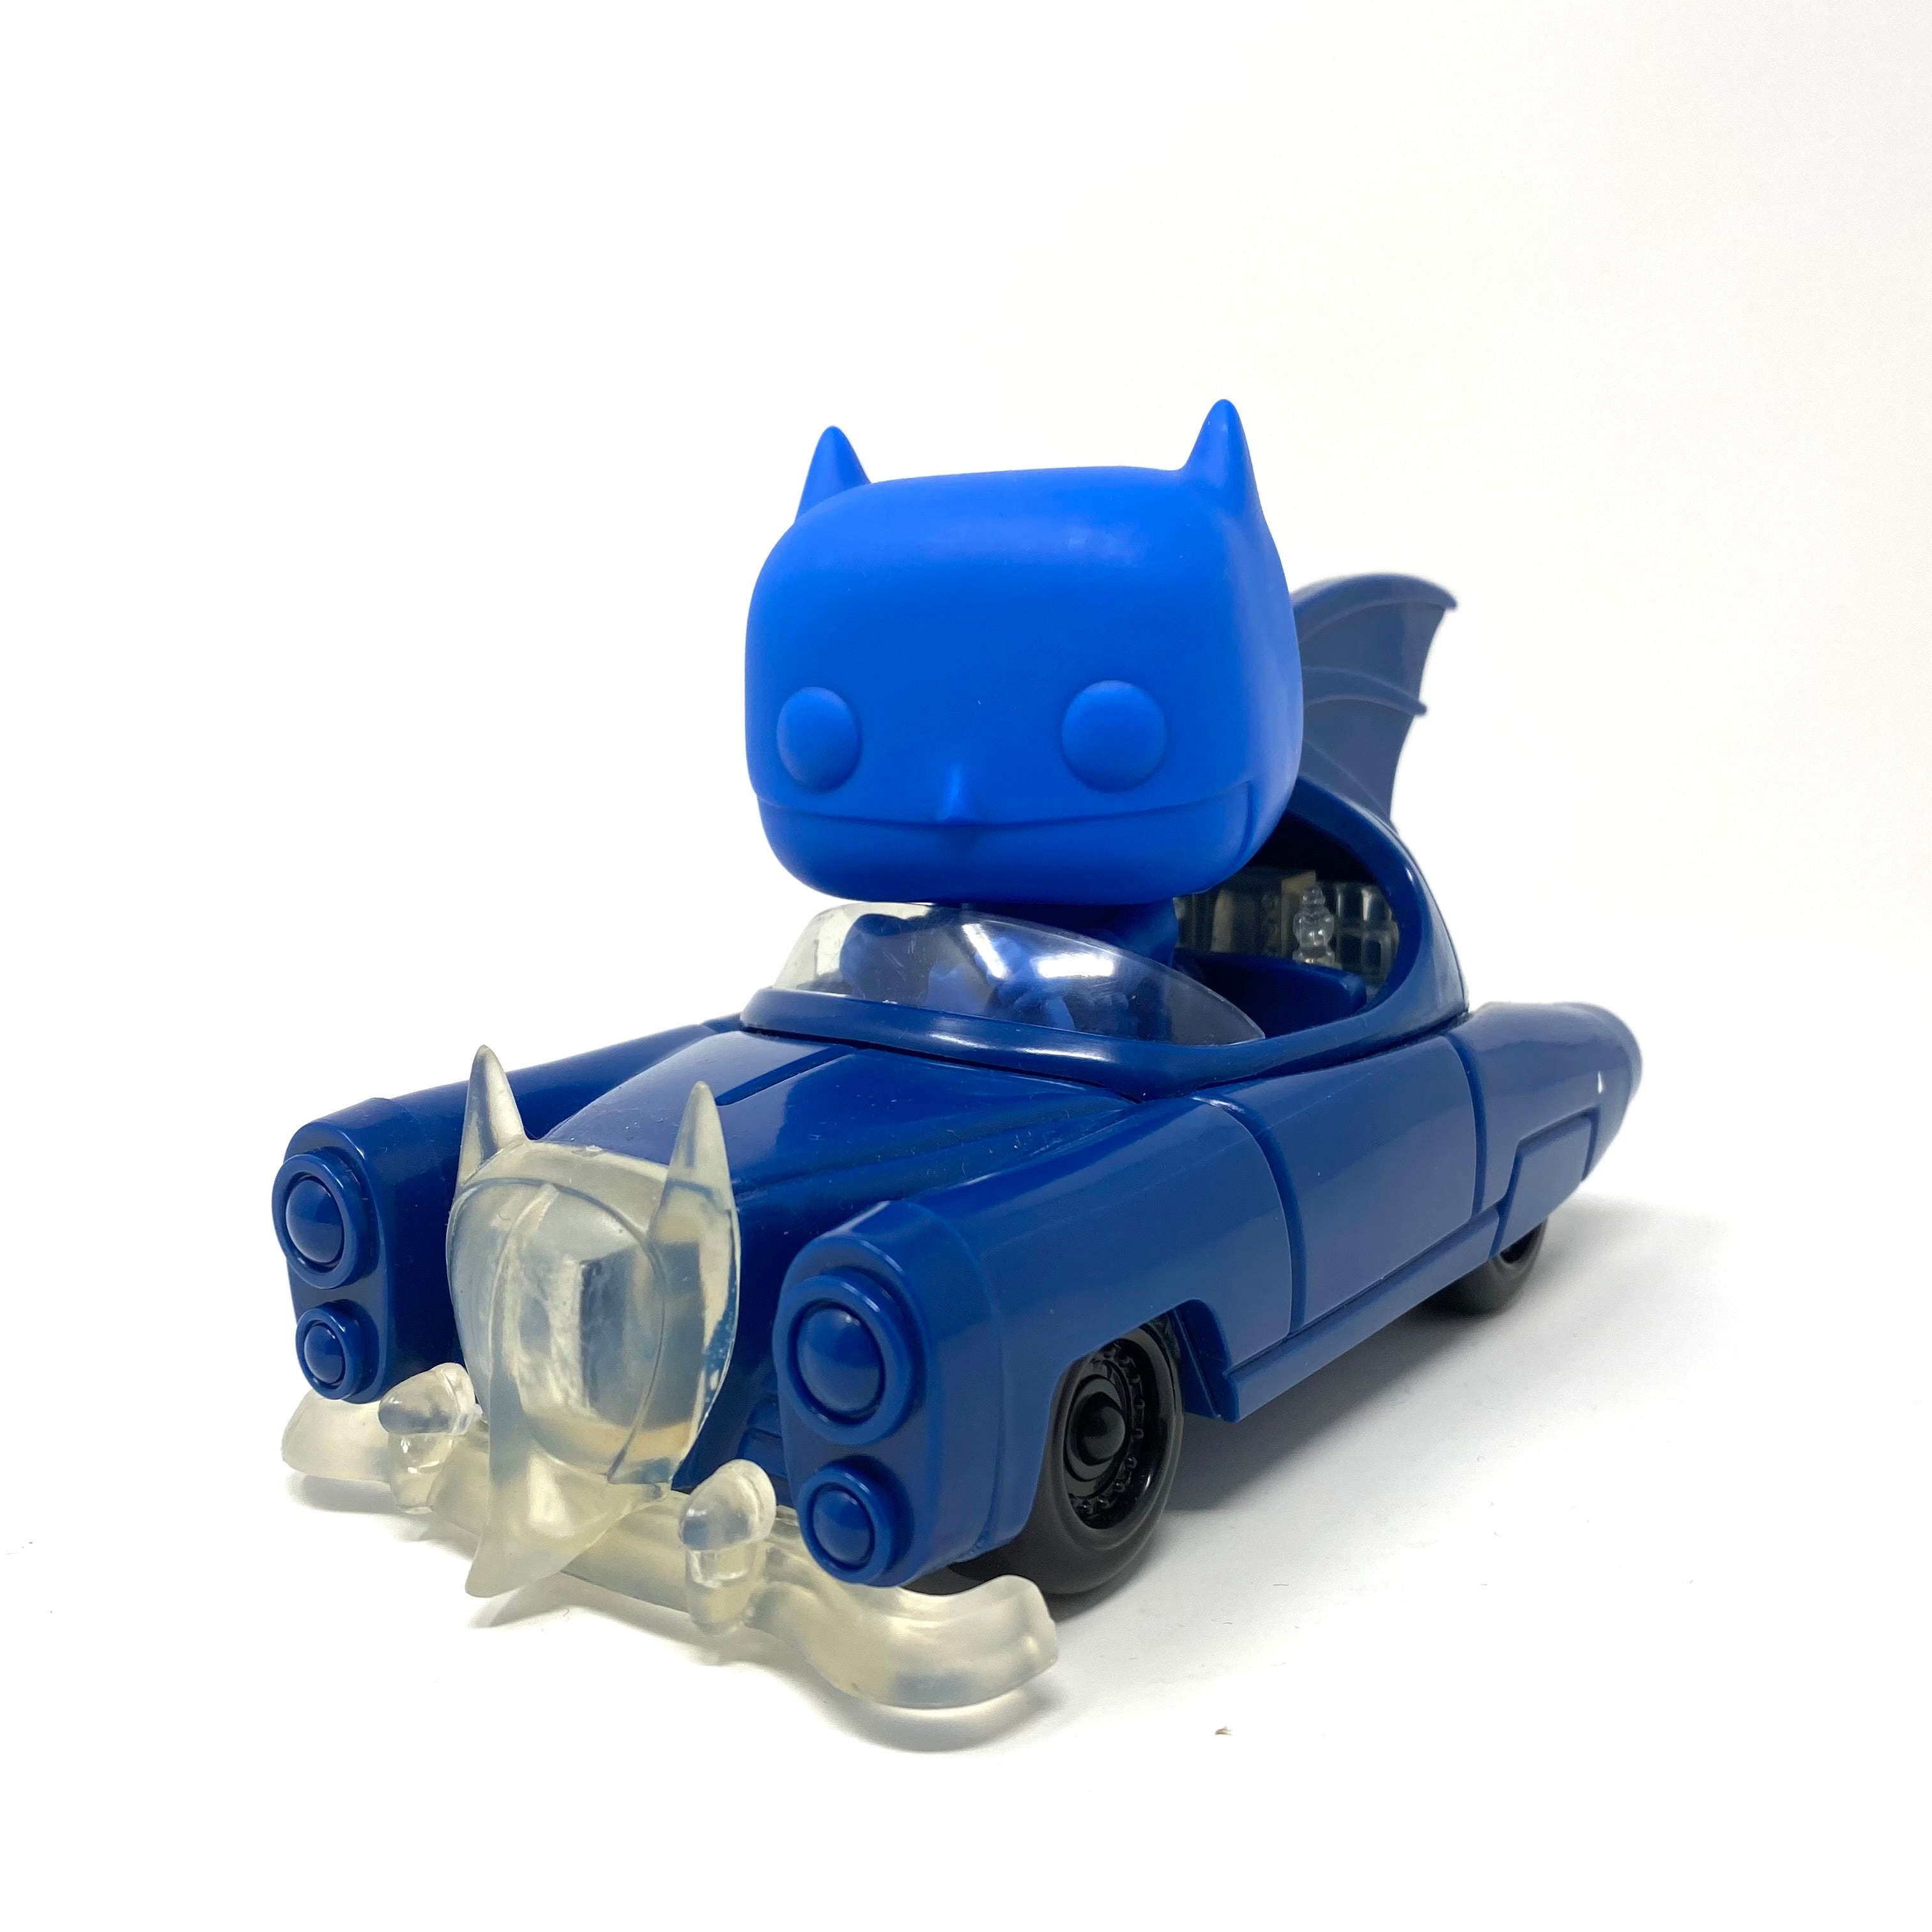 Buy Pop! Rides Batman in Batmobile at Funko.